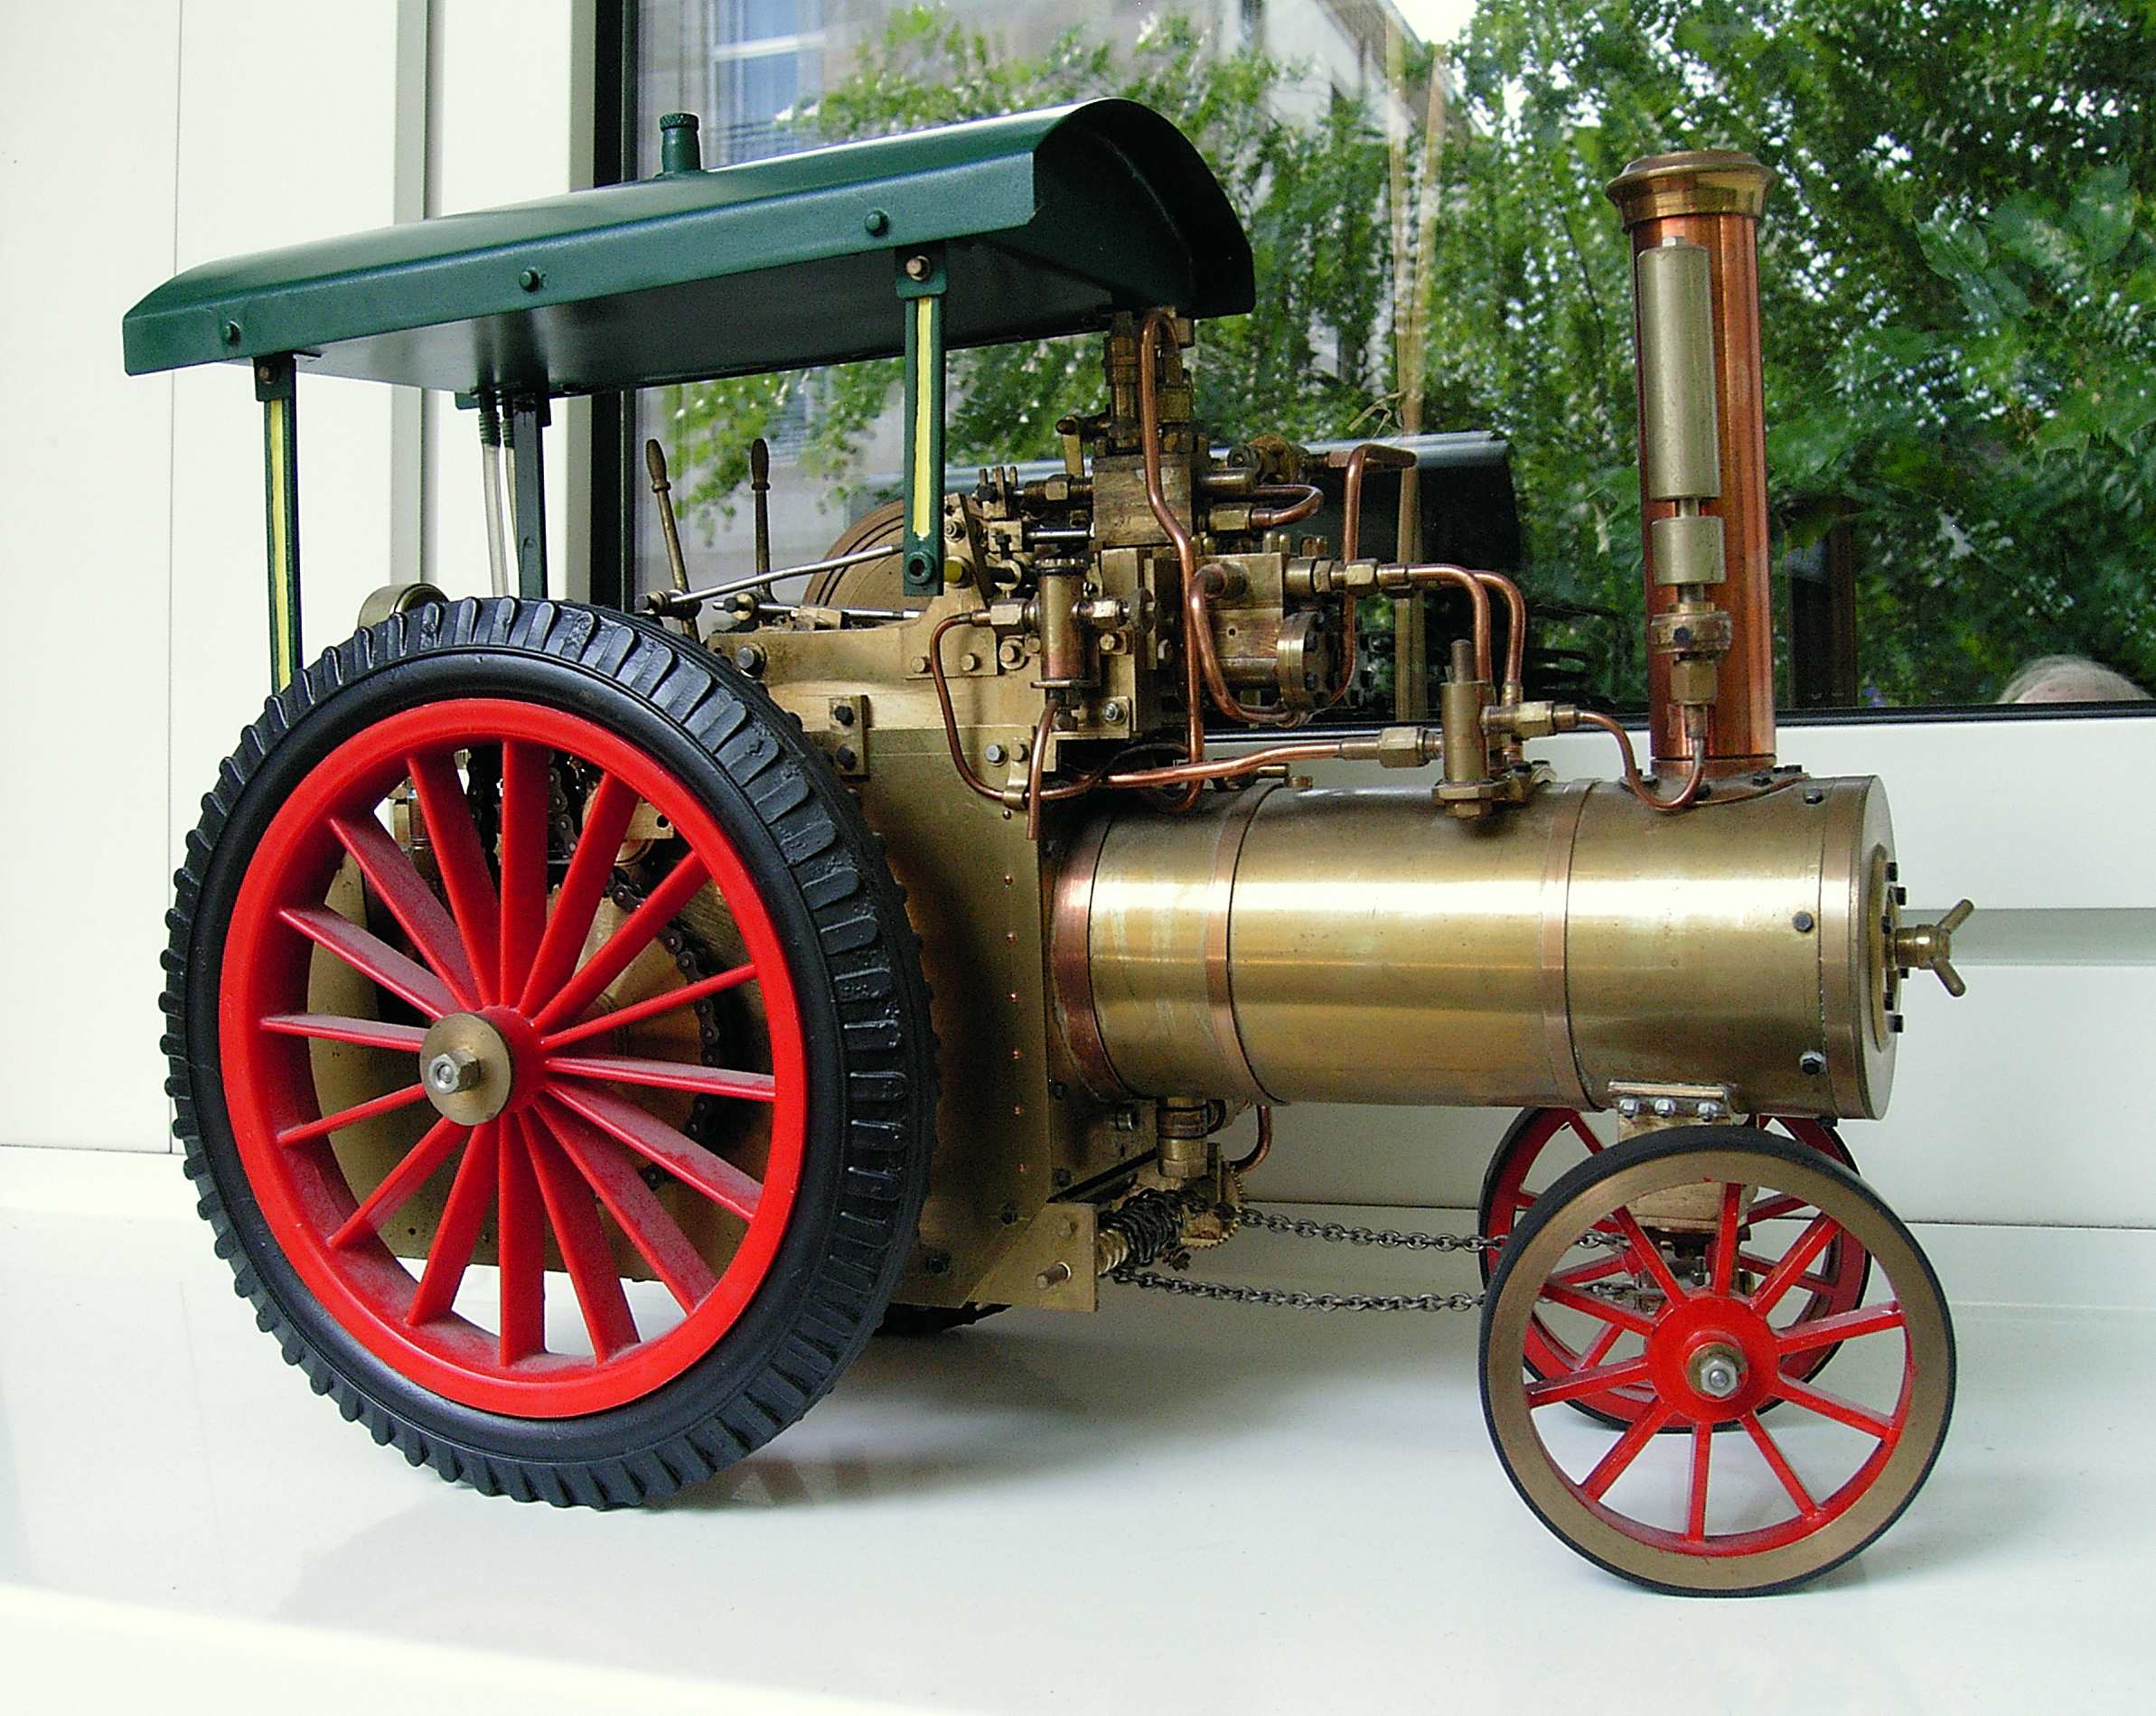 Modell einer Lokomobile, zwei Zylinder umsteuerbar, Über Getriebe fahrbar, Echtdampf